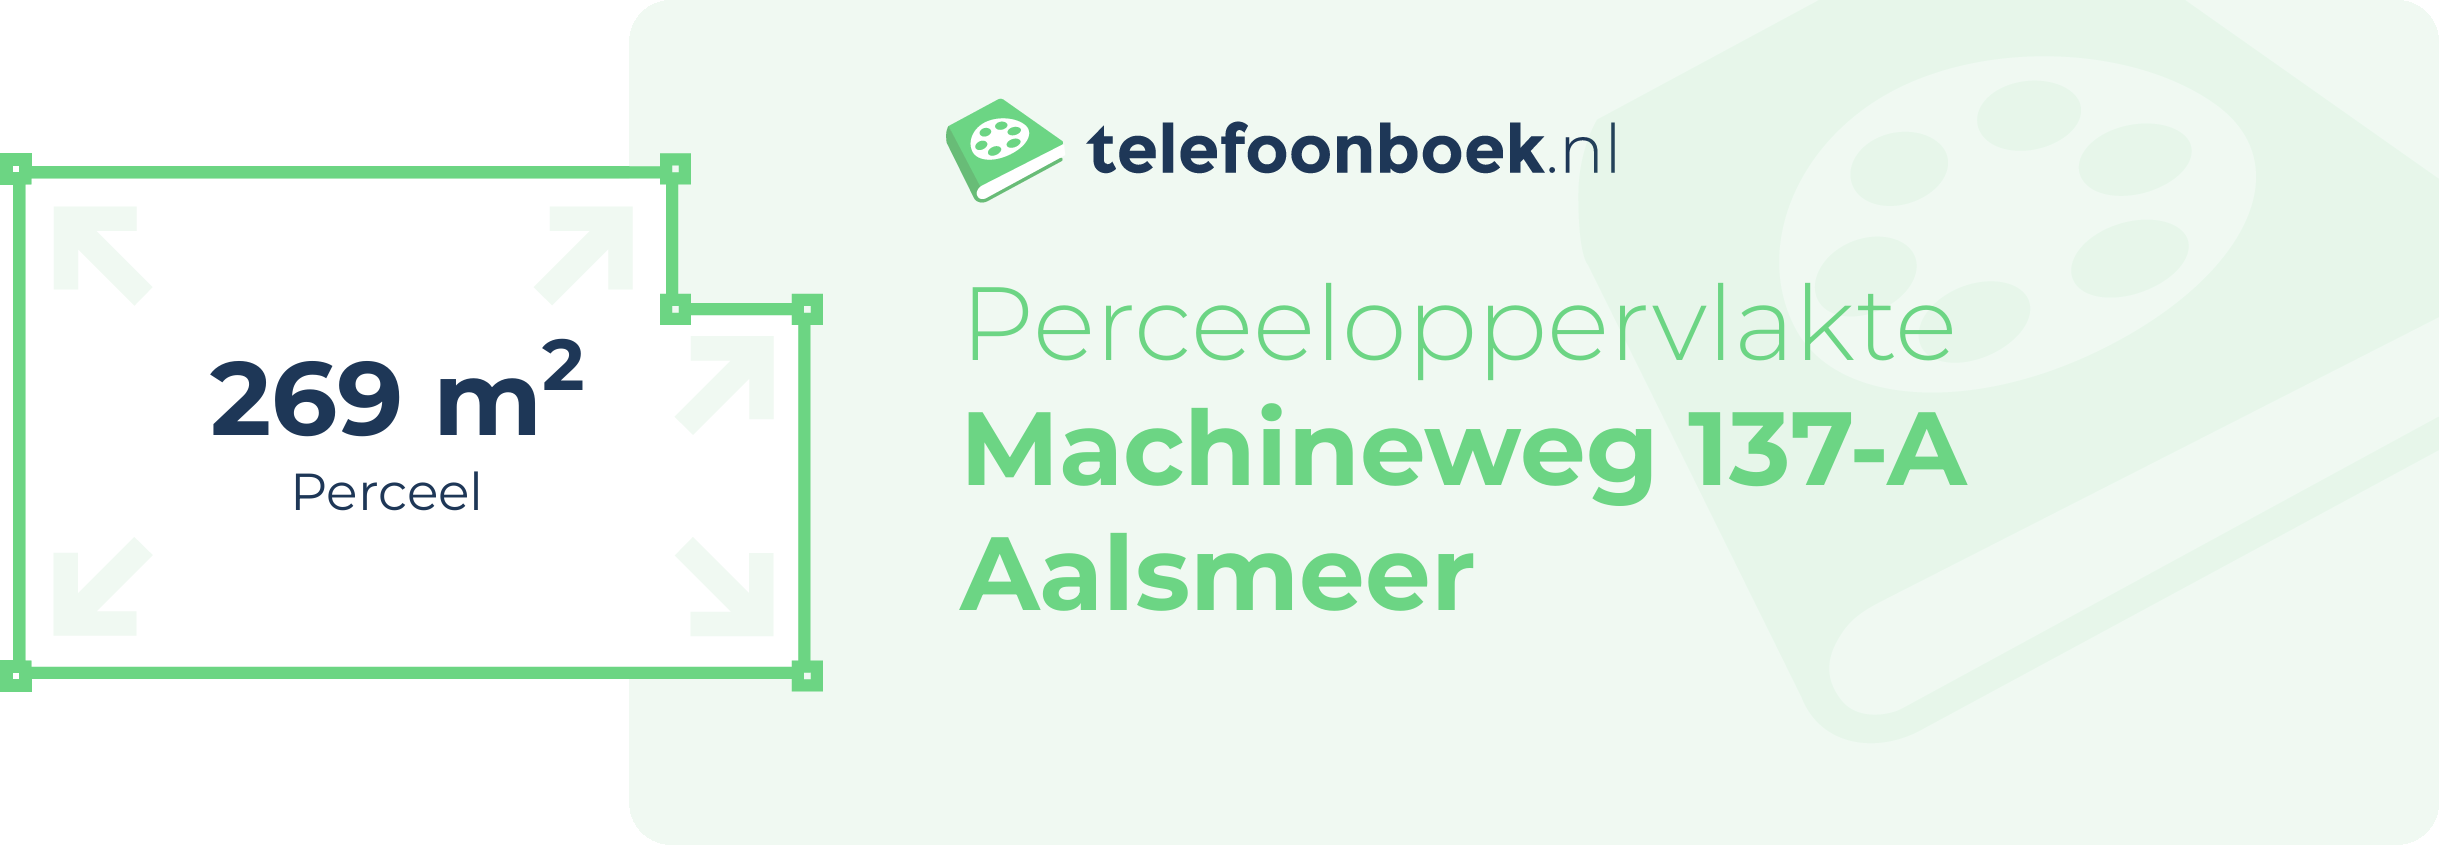 Perceeloppervlakte Machineweg 137-A Aalsmeer